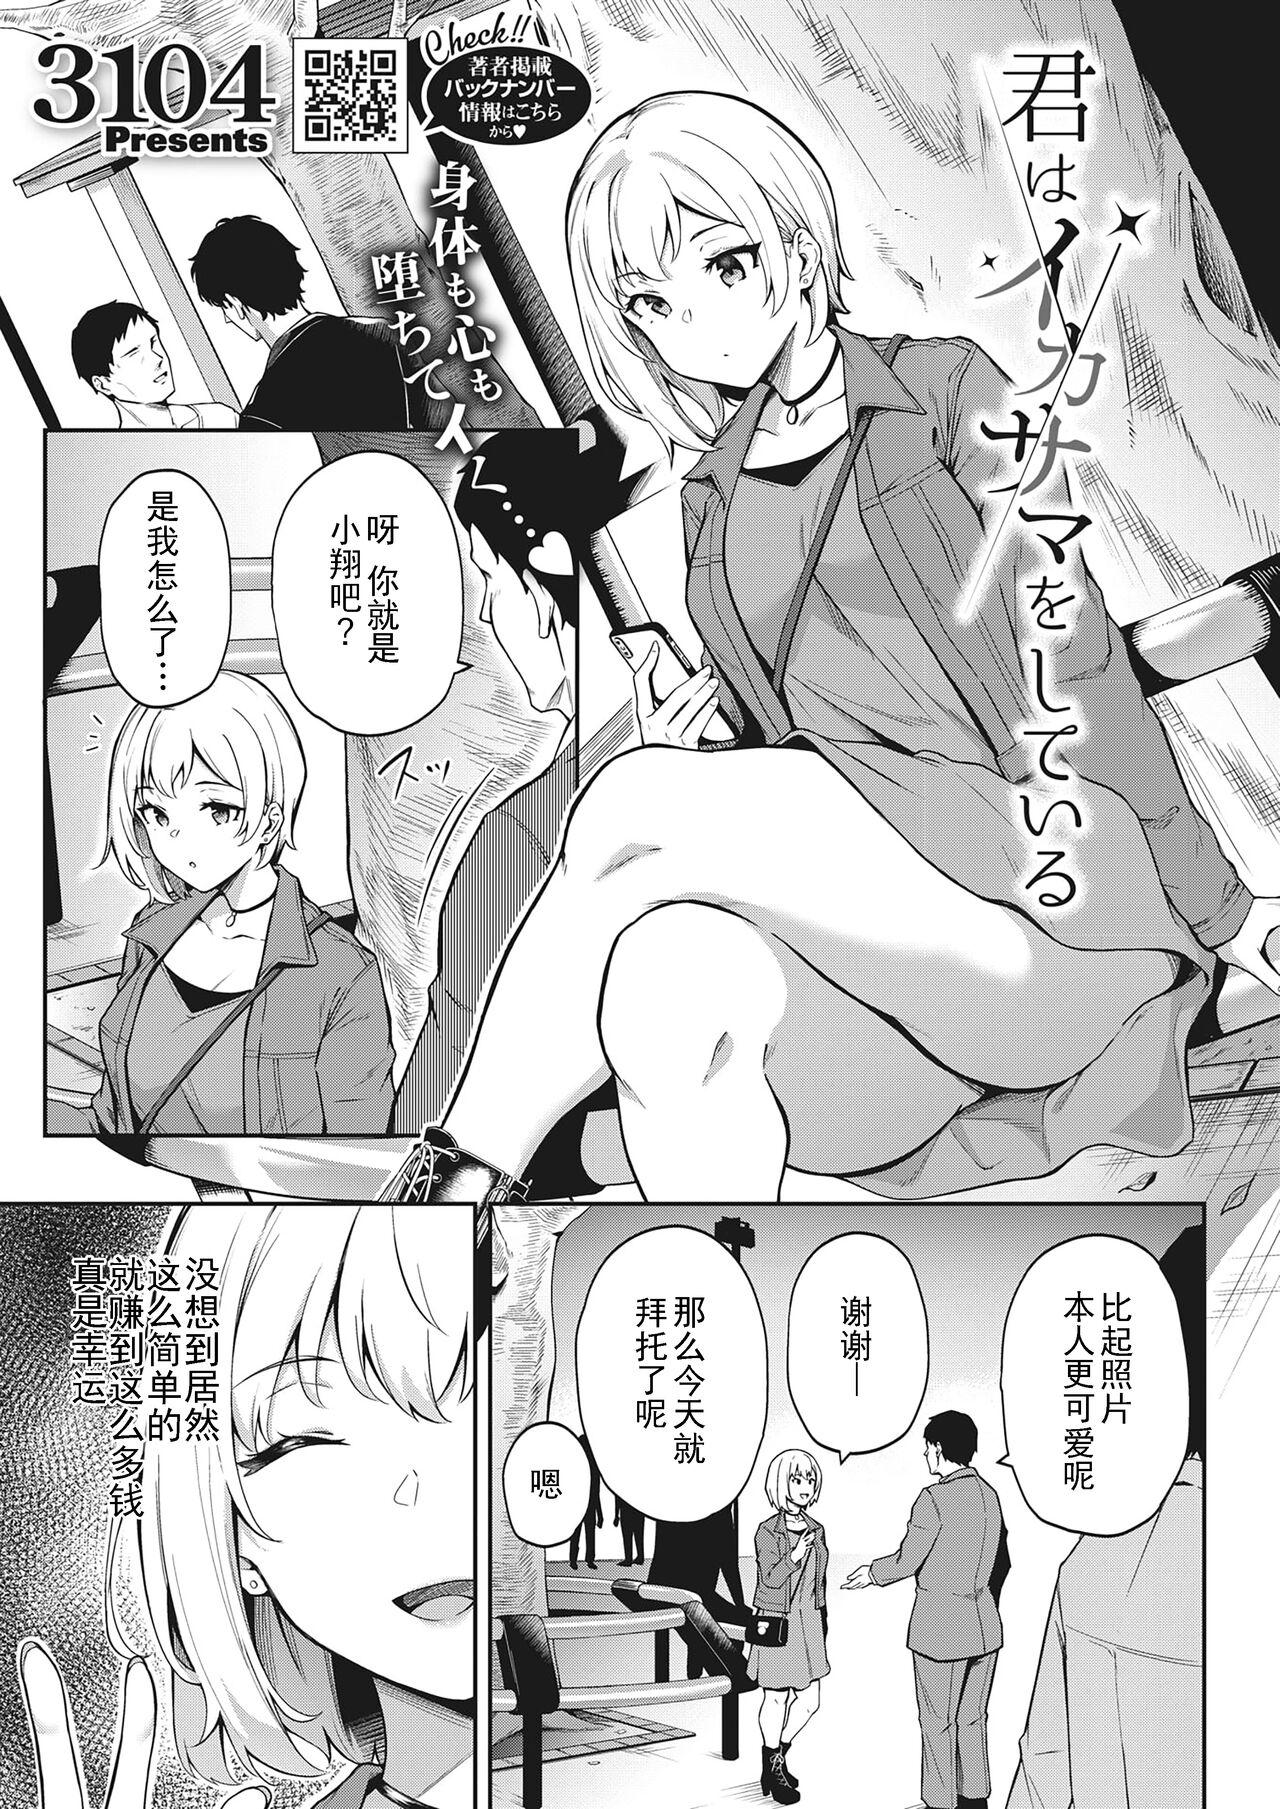 Gayfuck Kimi wa Ikasama o Shite iru Close - Page 1